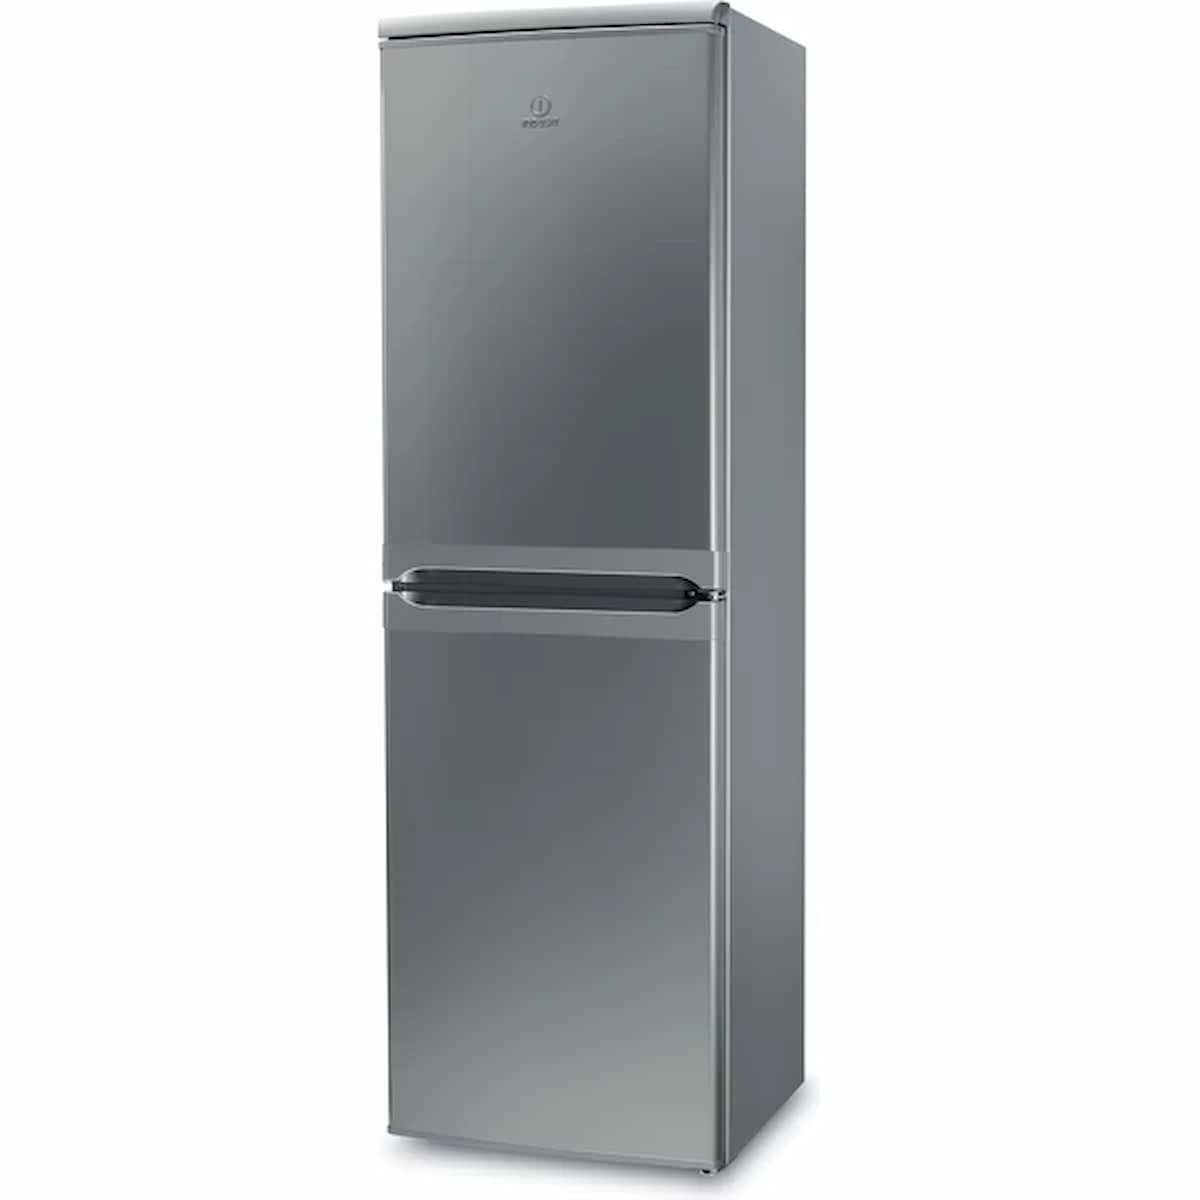 Indesit Freestanding fridge freezer - IBD5517SUK1